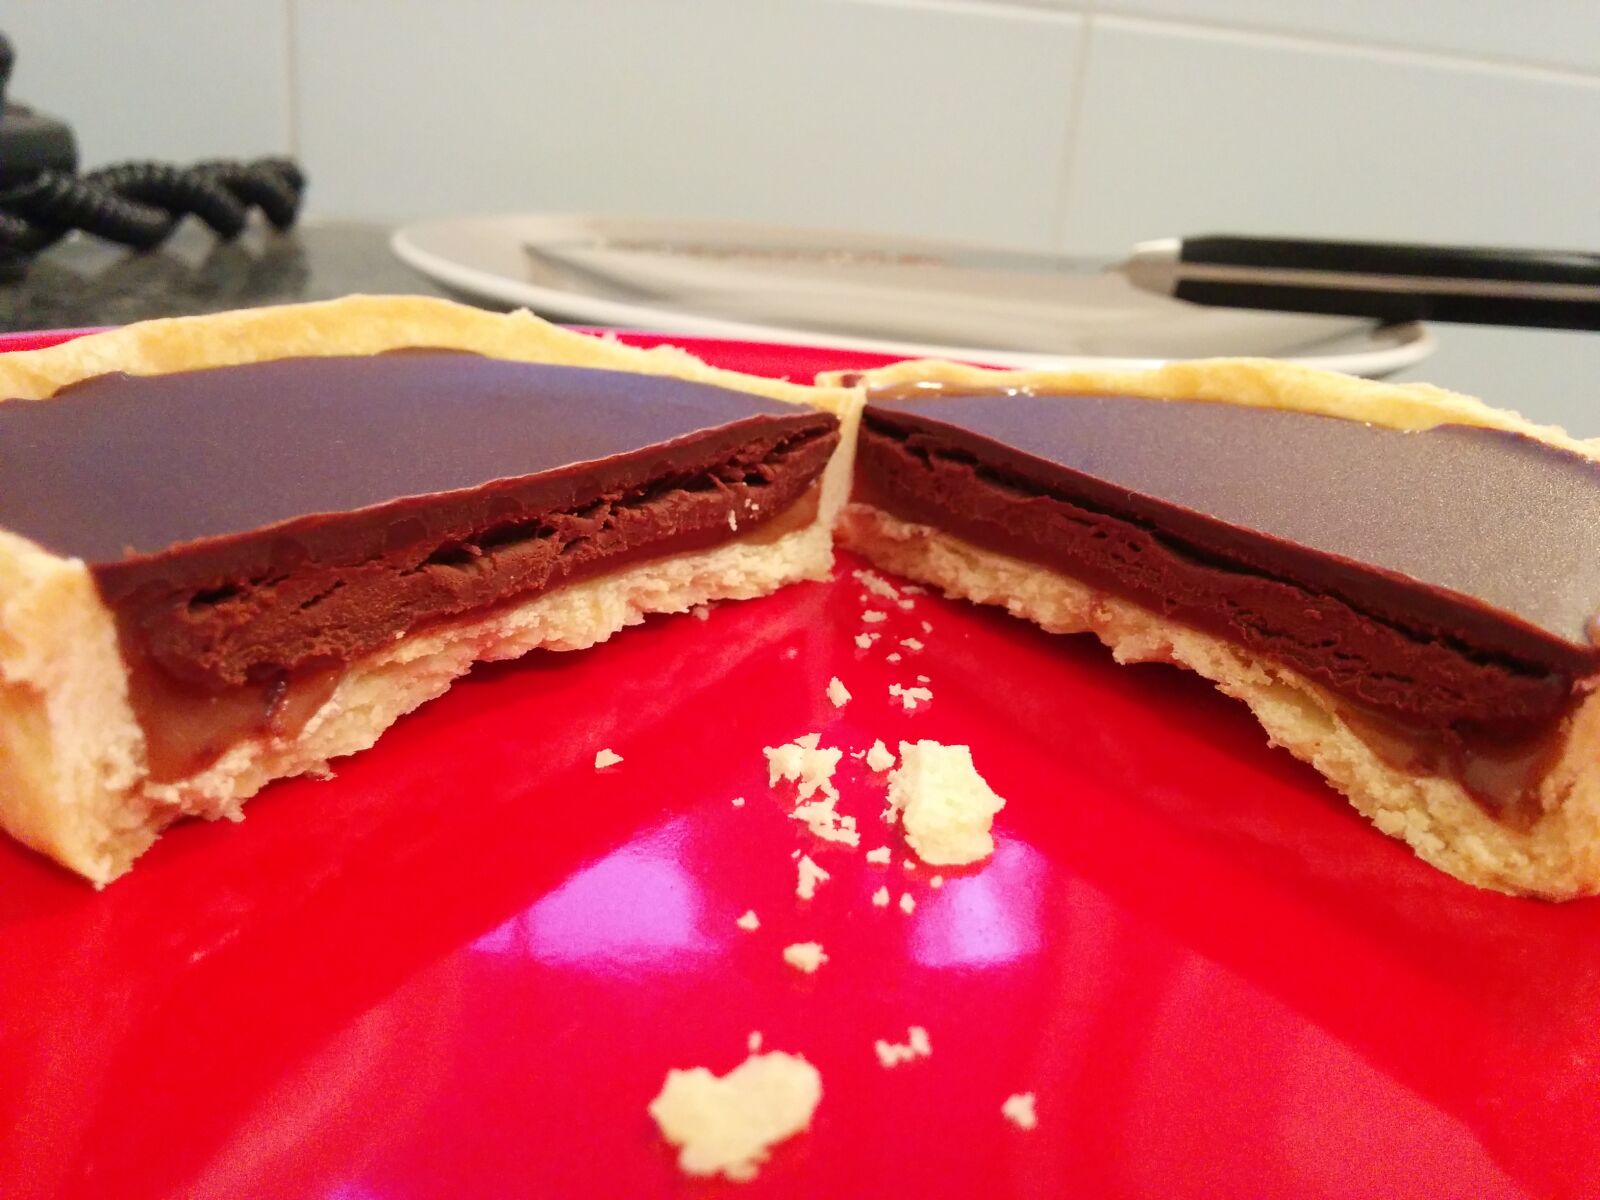 LG Nexus 5 sample photo. Chocolate, chocolate, cake, tart photography